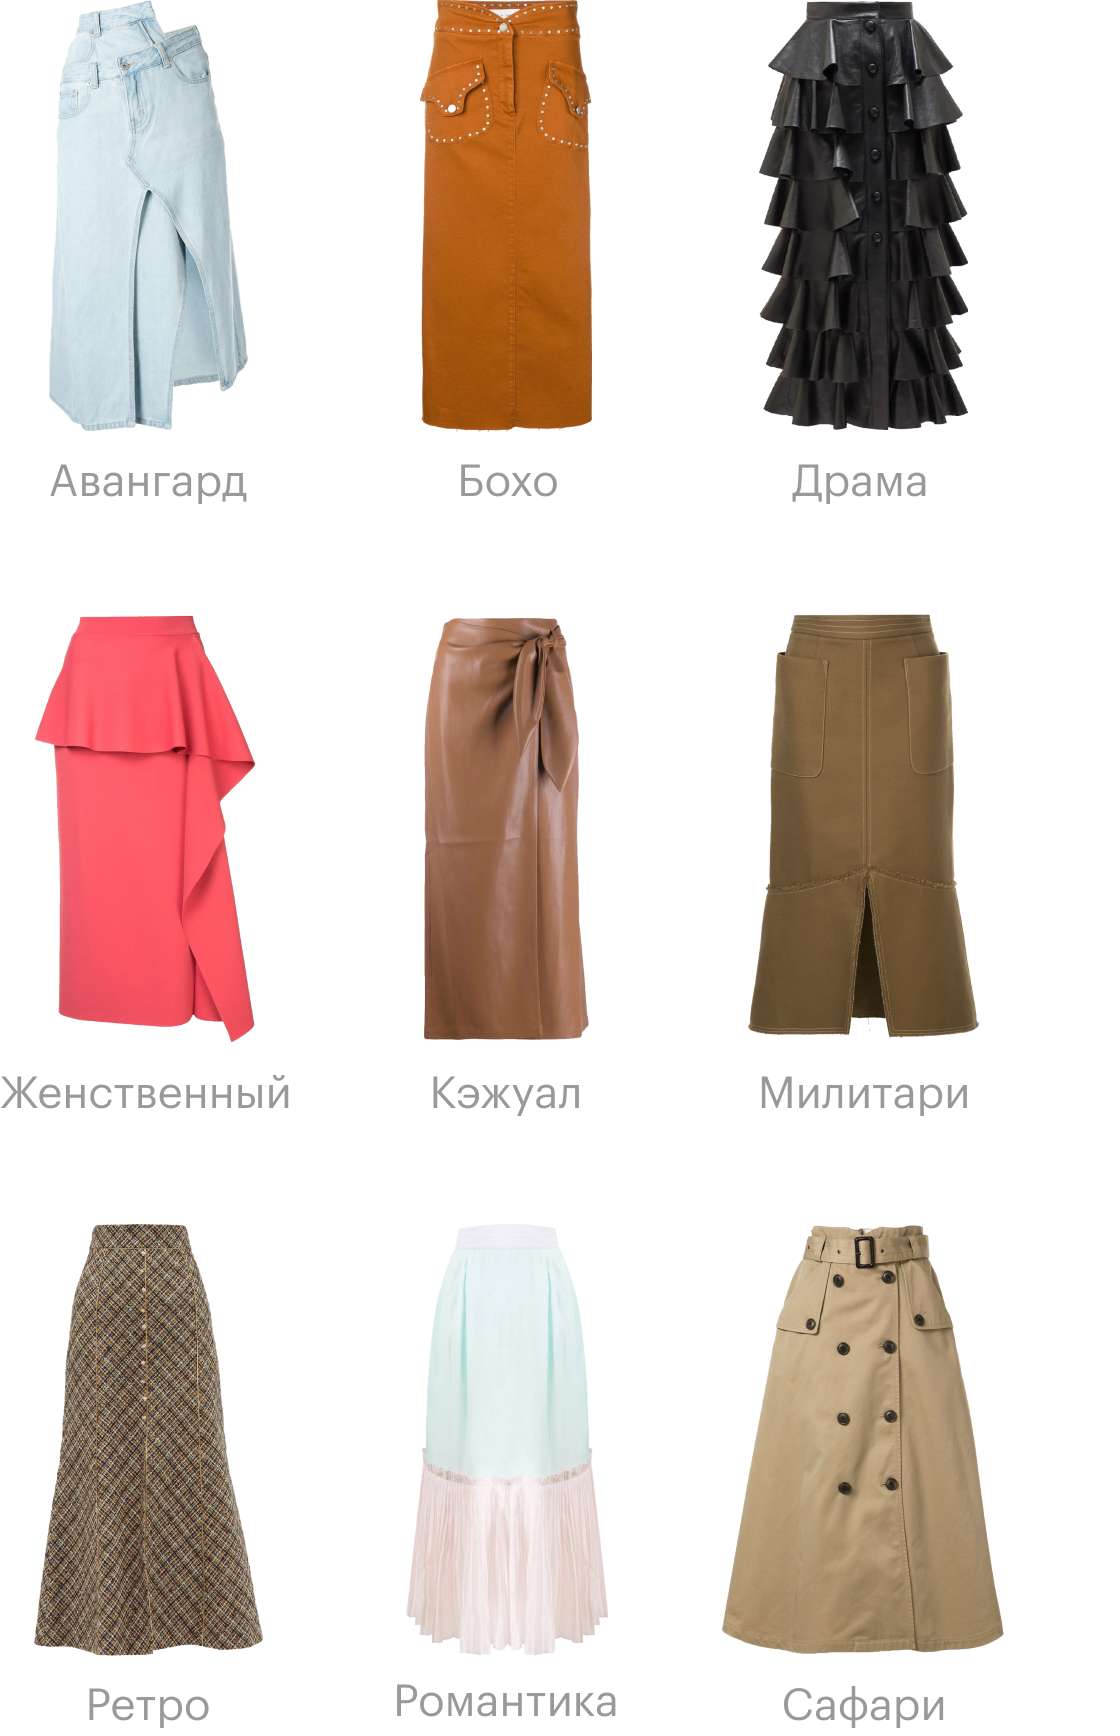 Как проявляются разные стили на примере одной юбки